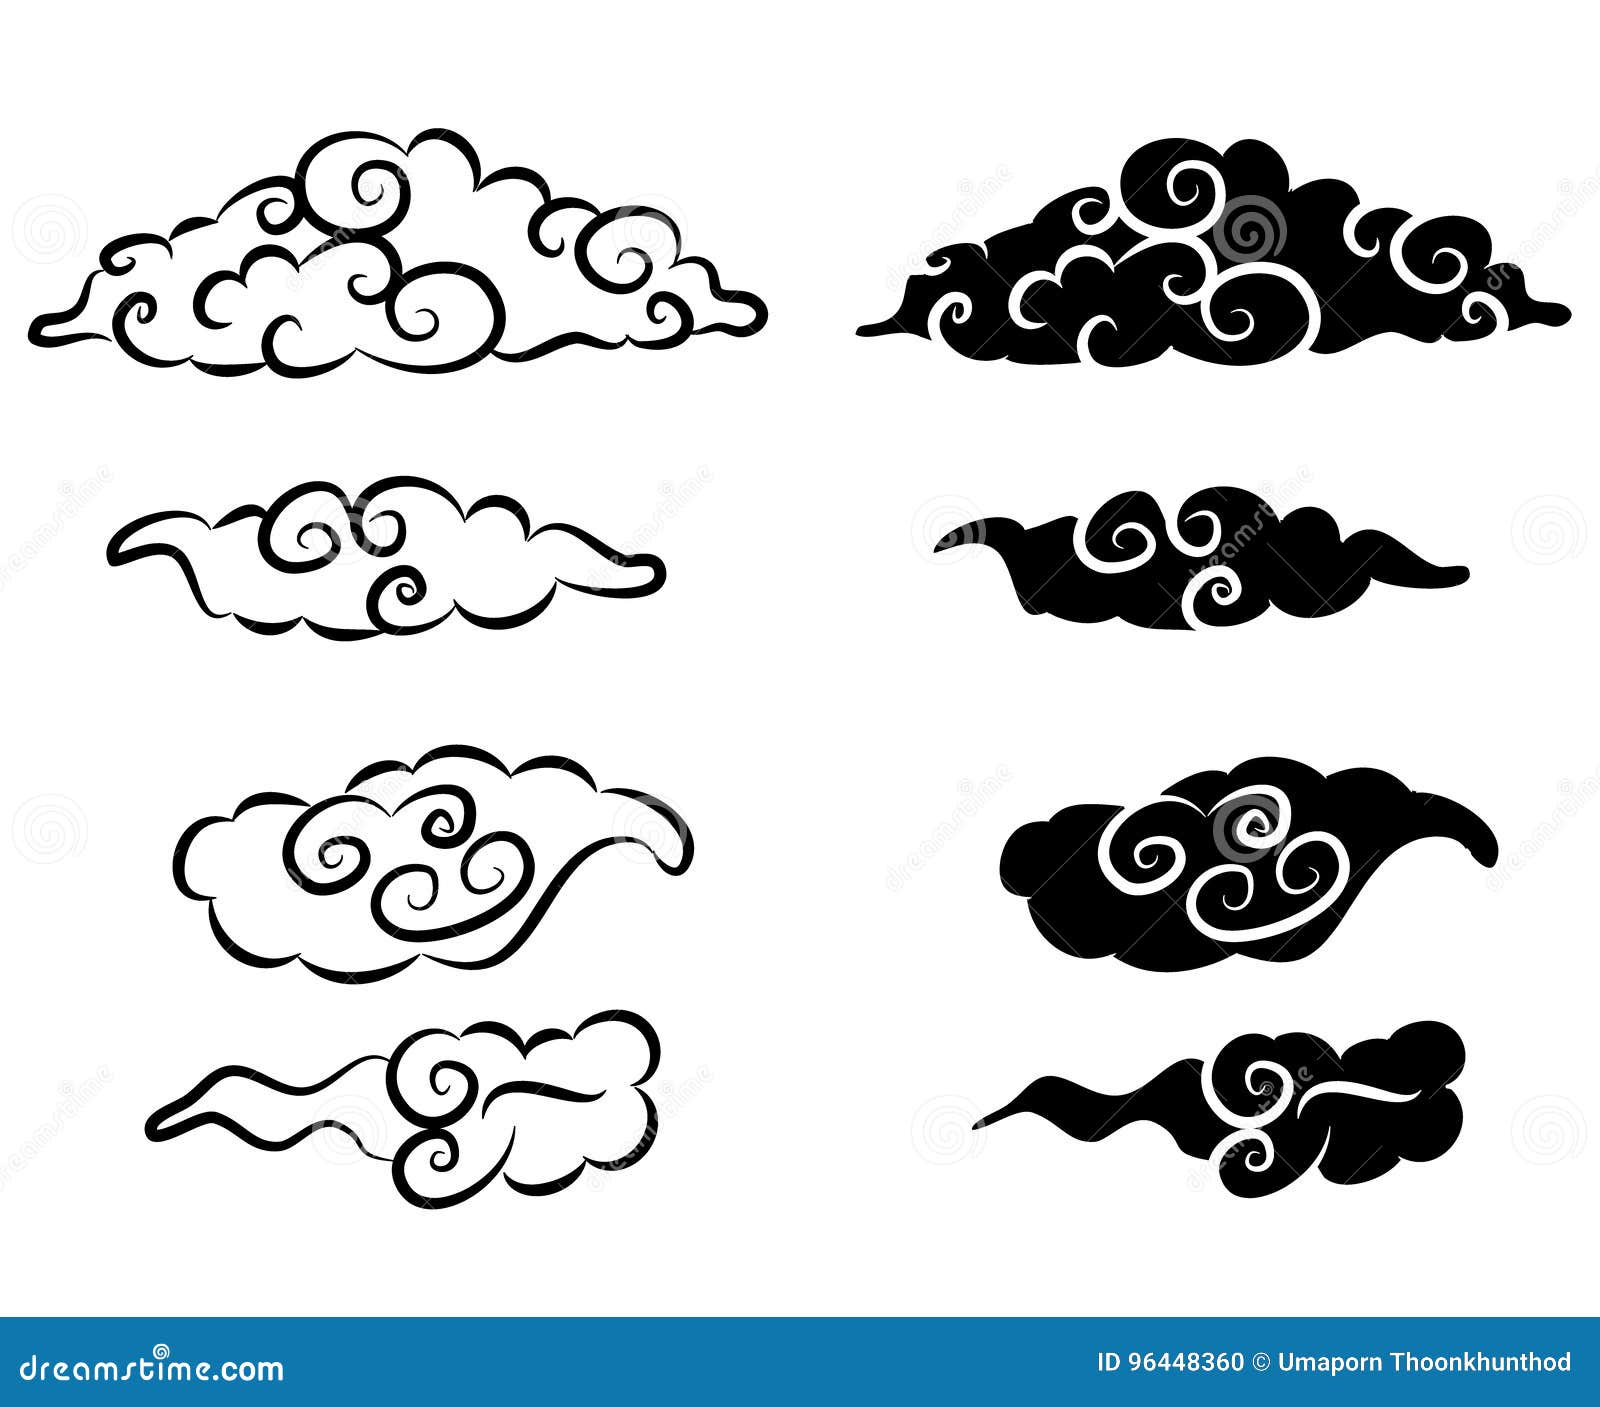 99 Tatuagens de Nuvens [Fotos, Desenhos, Significados]